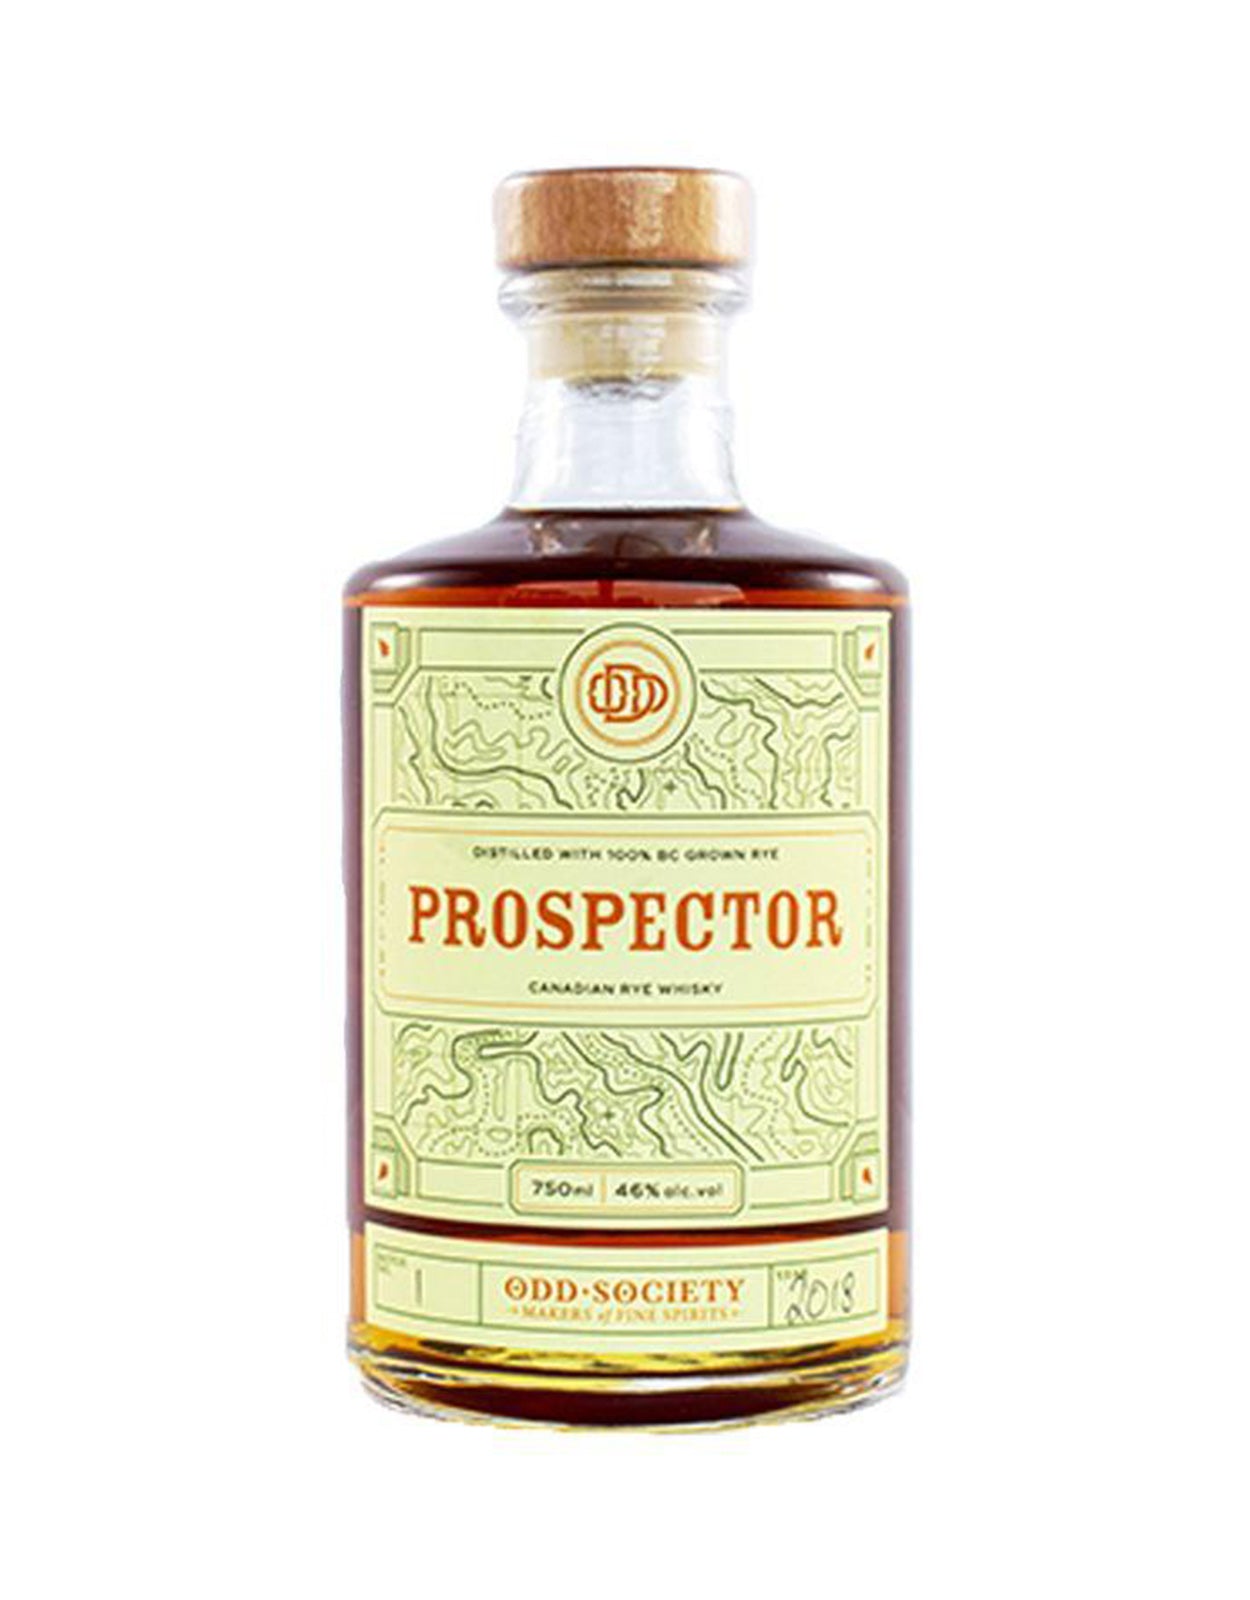 Odd Society Prospector Rye Whisky